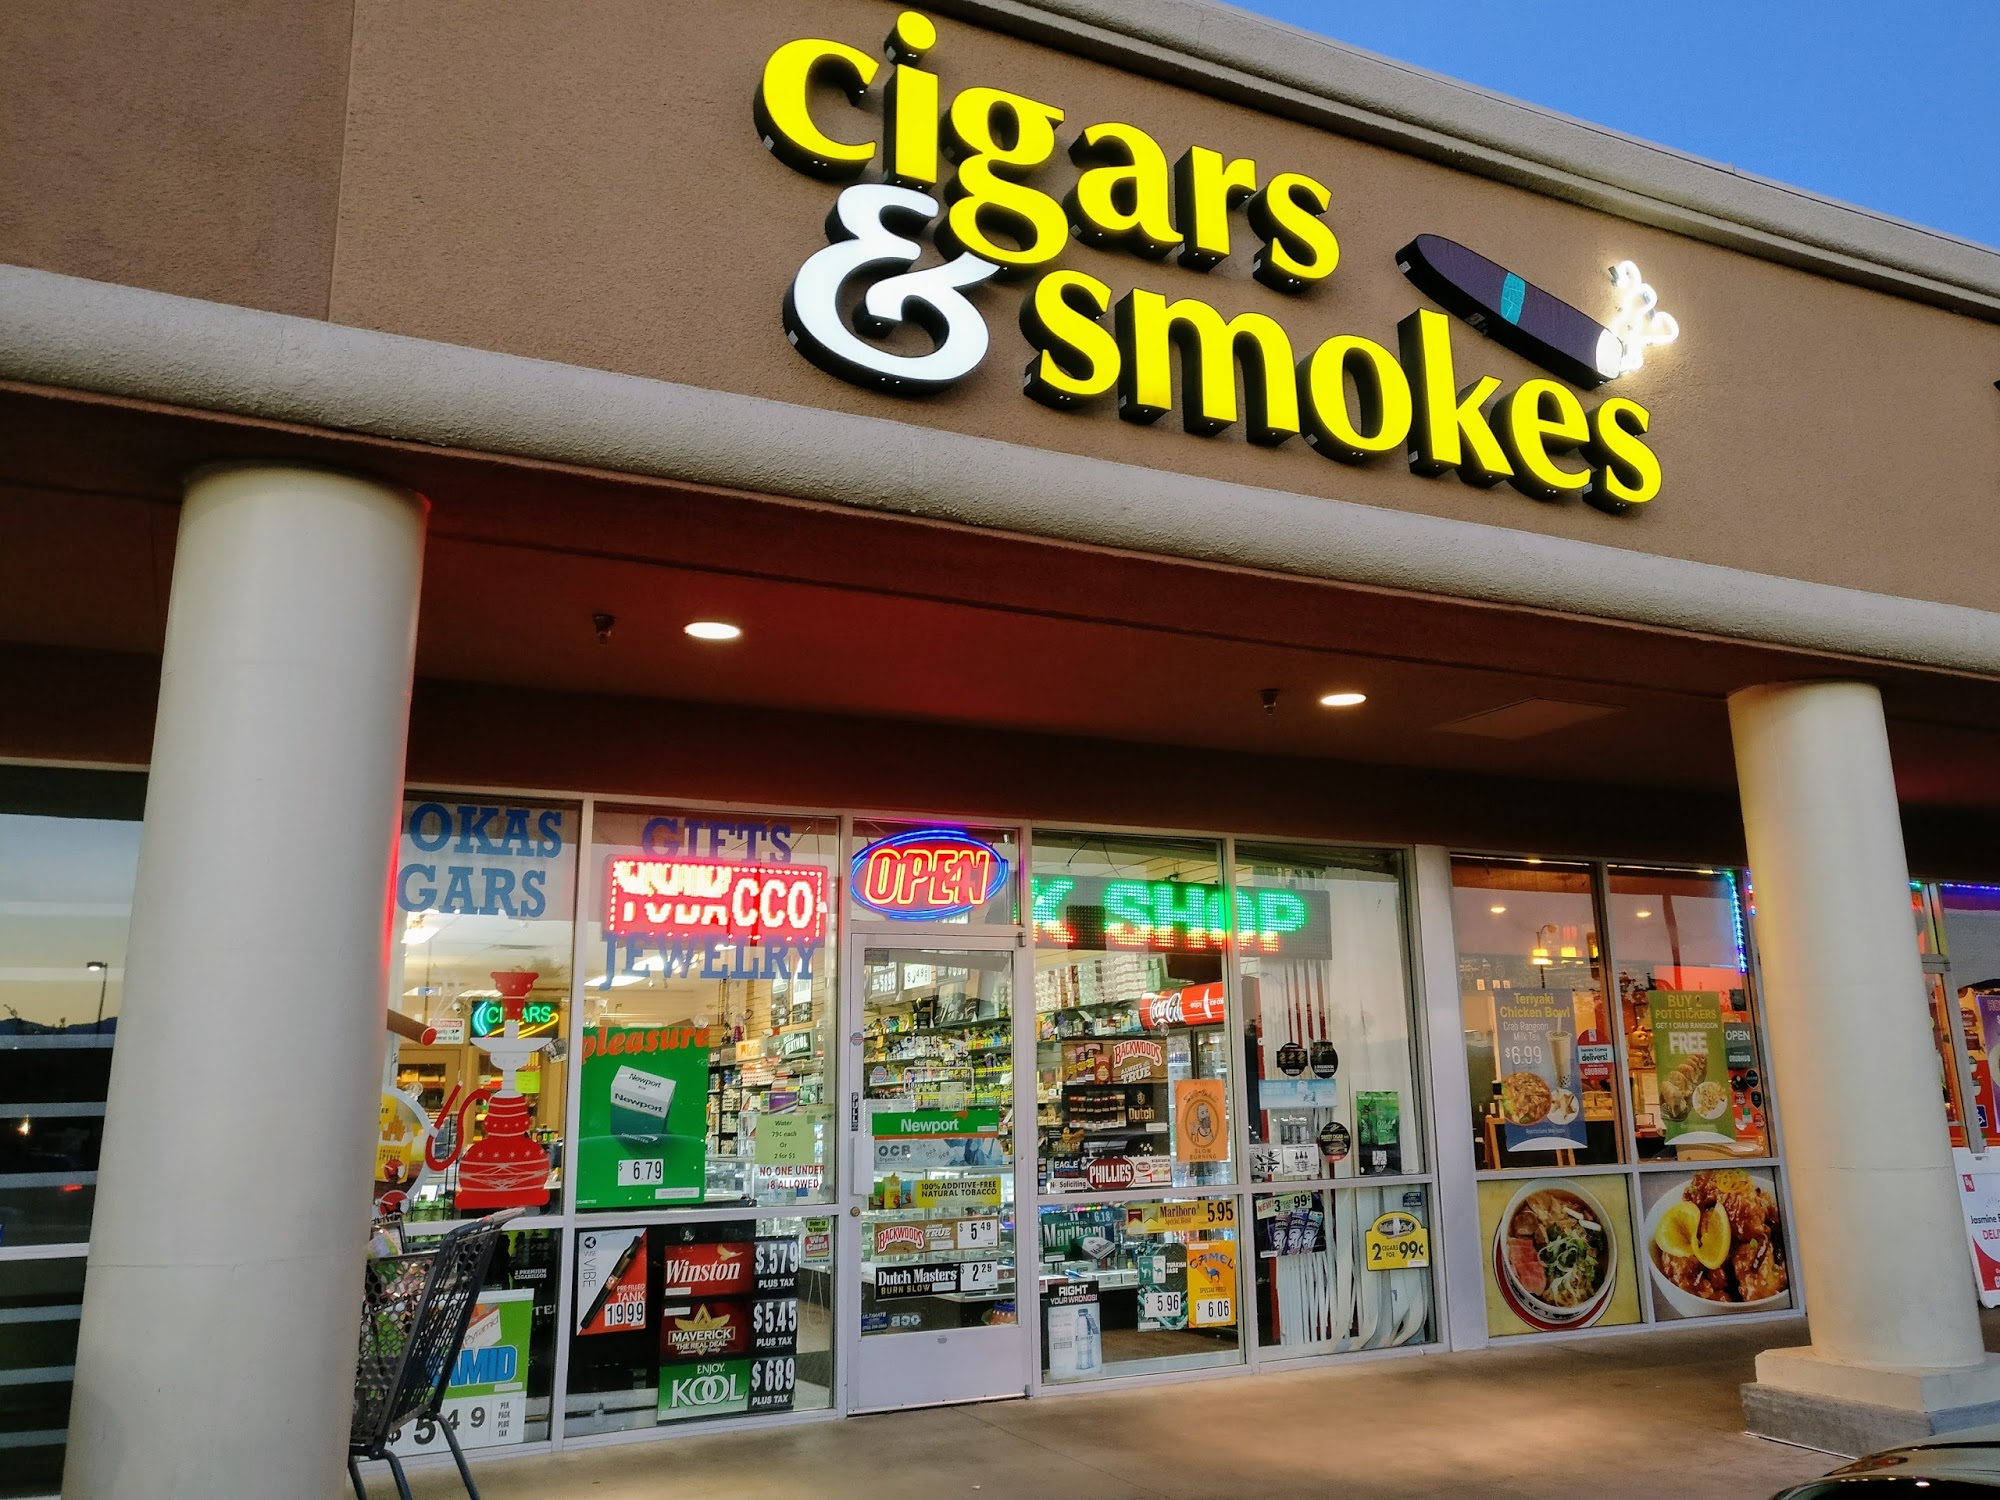 GK Cigars & Smokes